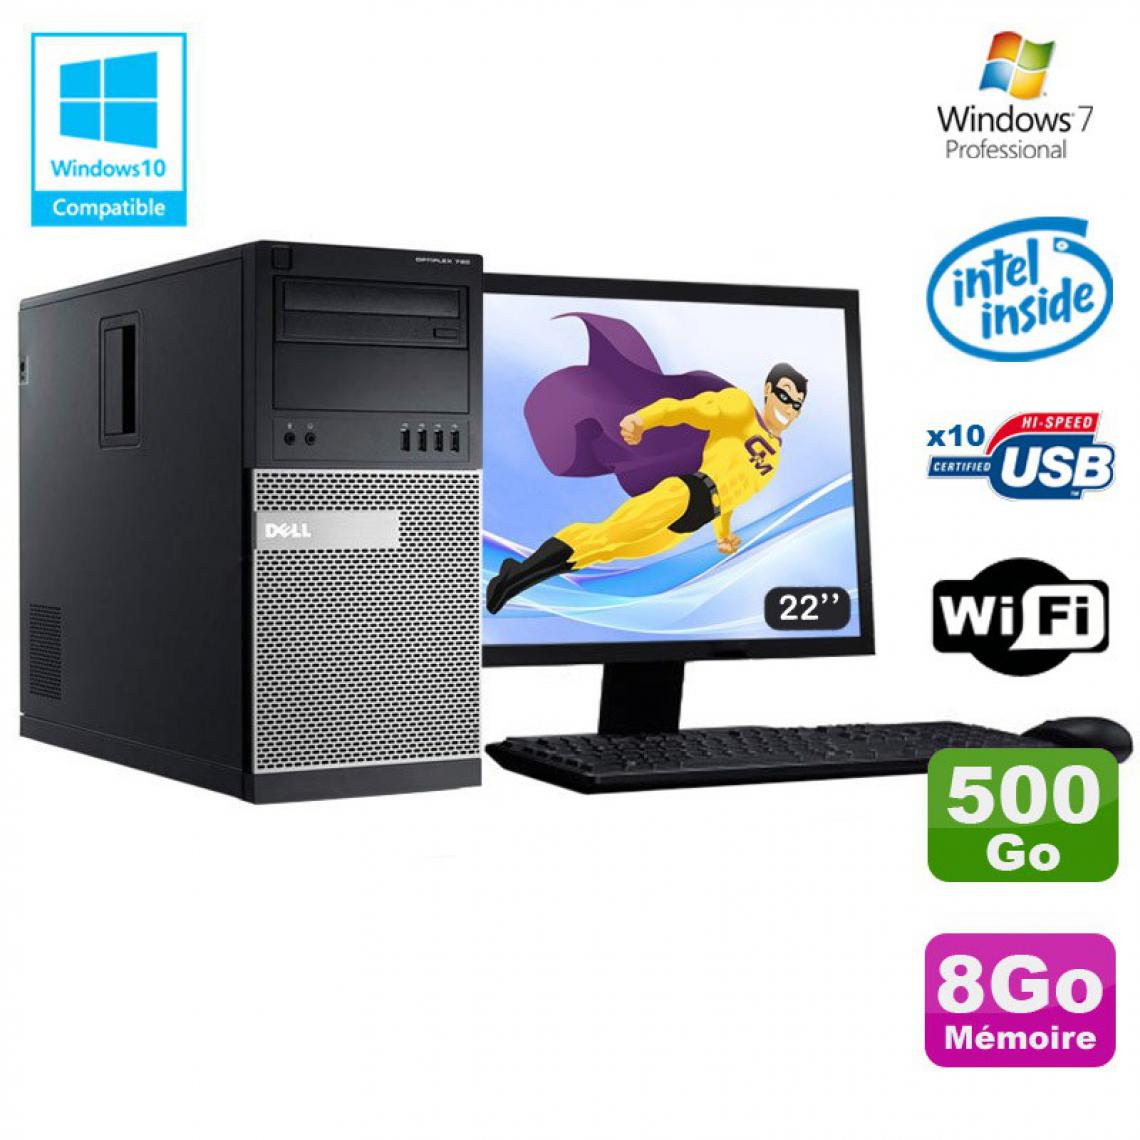 Dell - Lot PC Tour Dell 790 G630 2.7Ghz 8Go Disque 500Go DVD WIFI Win 7 + Ecran 22" - PC Fixe